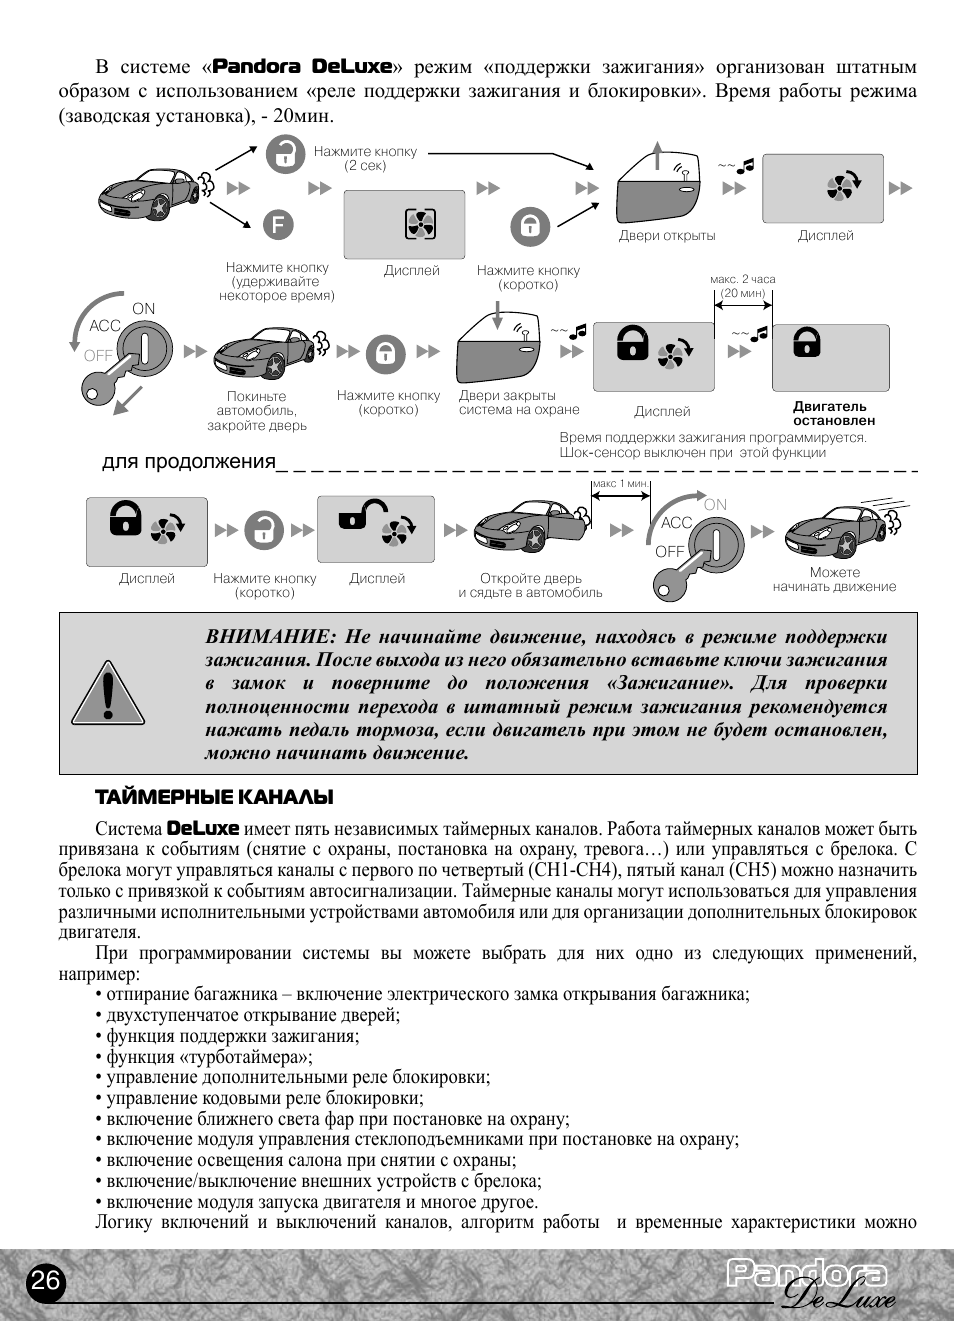 Сигнализация pandora dxl 3910: инструкция по эксплуатации и установке, схема подключения, программирование брелока и видео по настройке автосигнализации